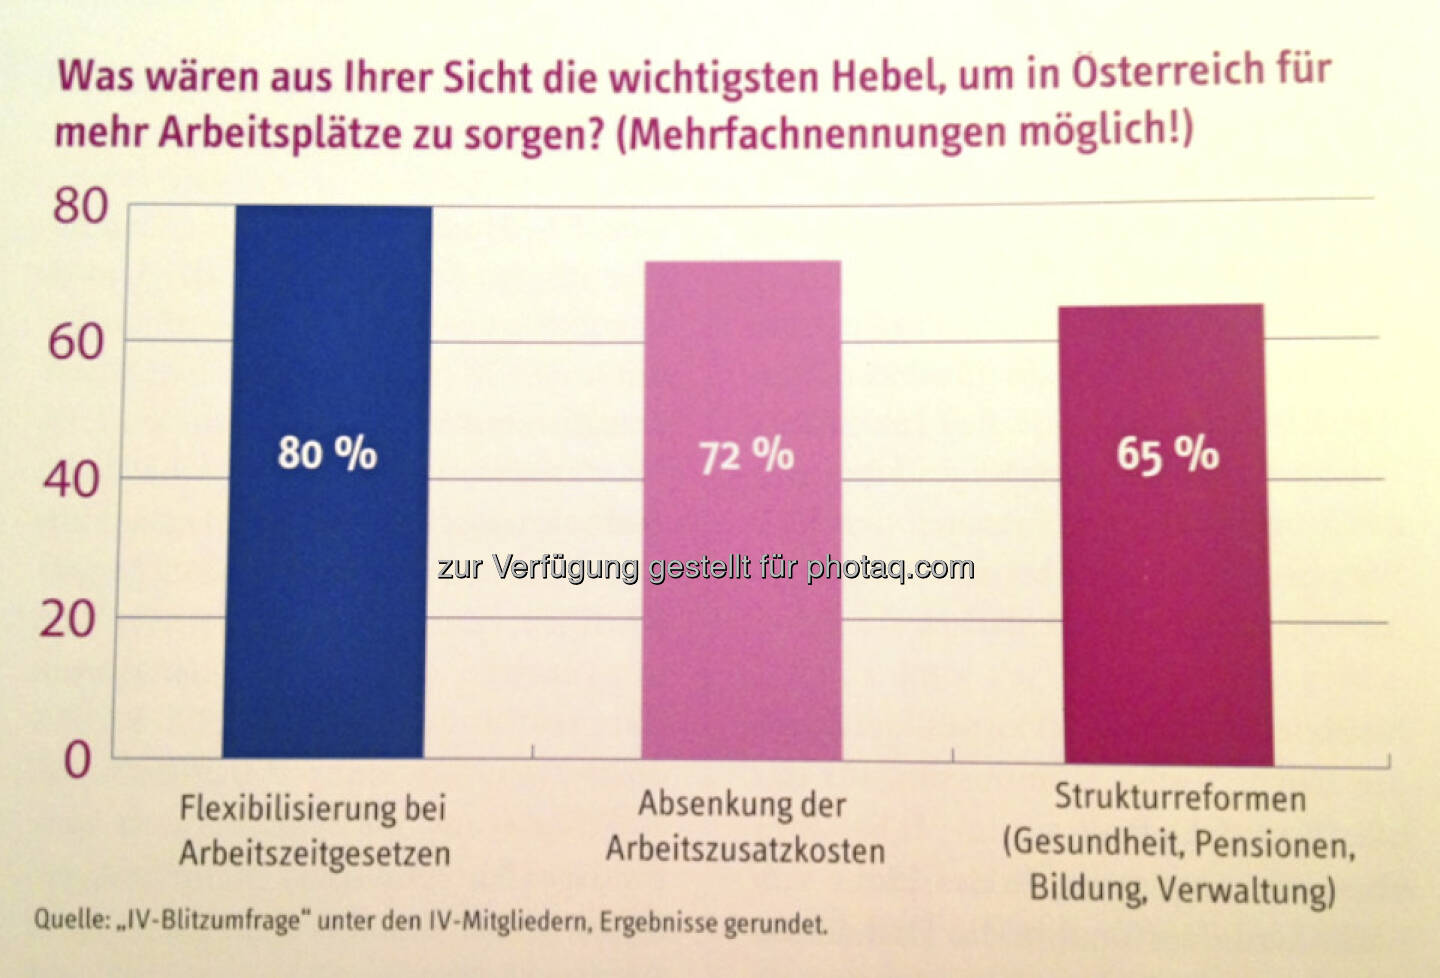 Was wären aus Ihrer Sicht die wichtigsten Hebel, um in Österreich für mehr Arbeitsplätze zu sorgen?